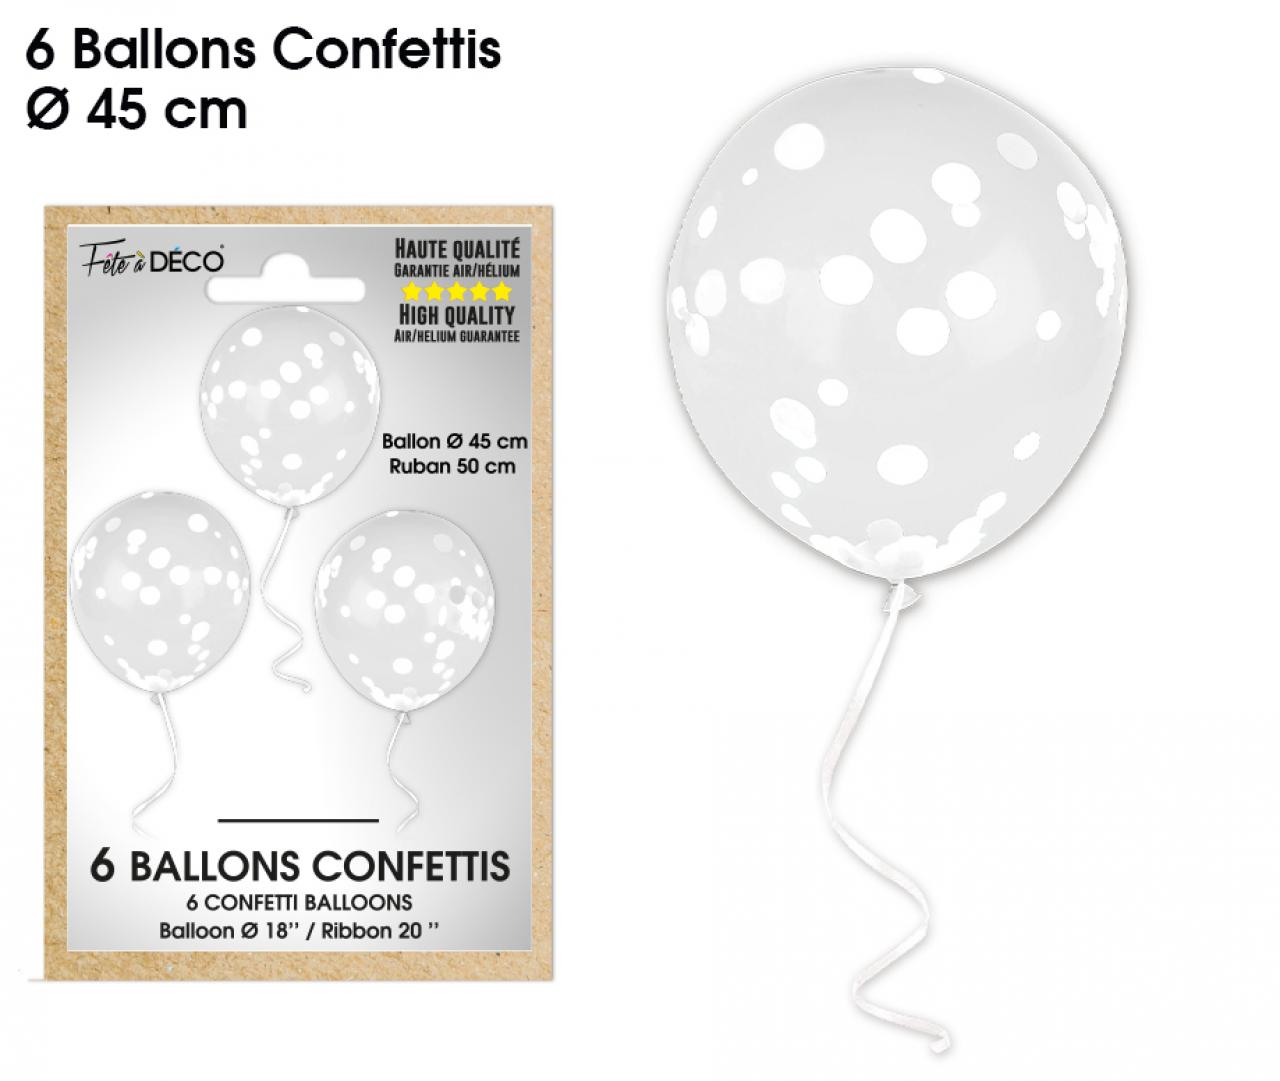 Ballons confettis - Espace fete